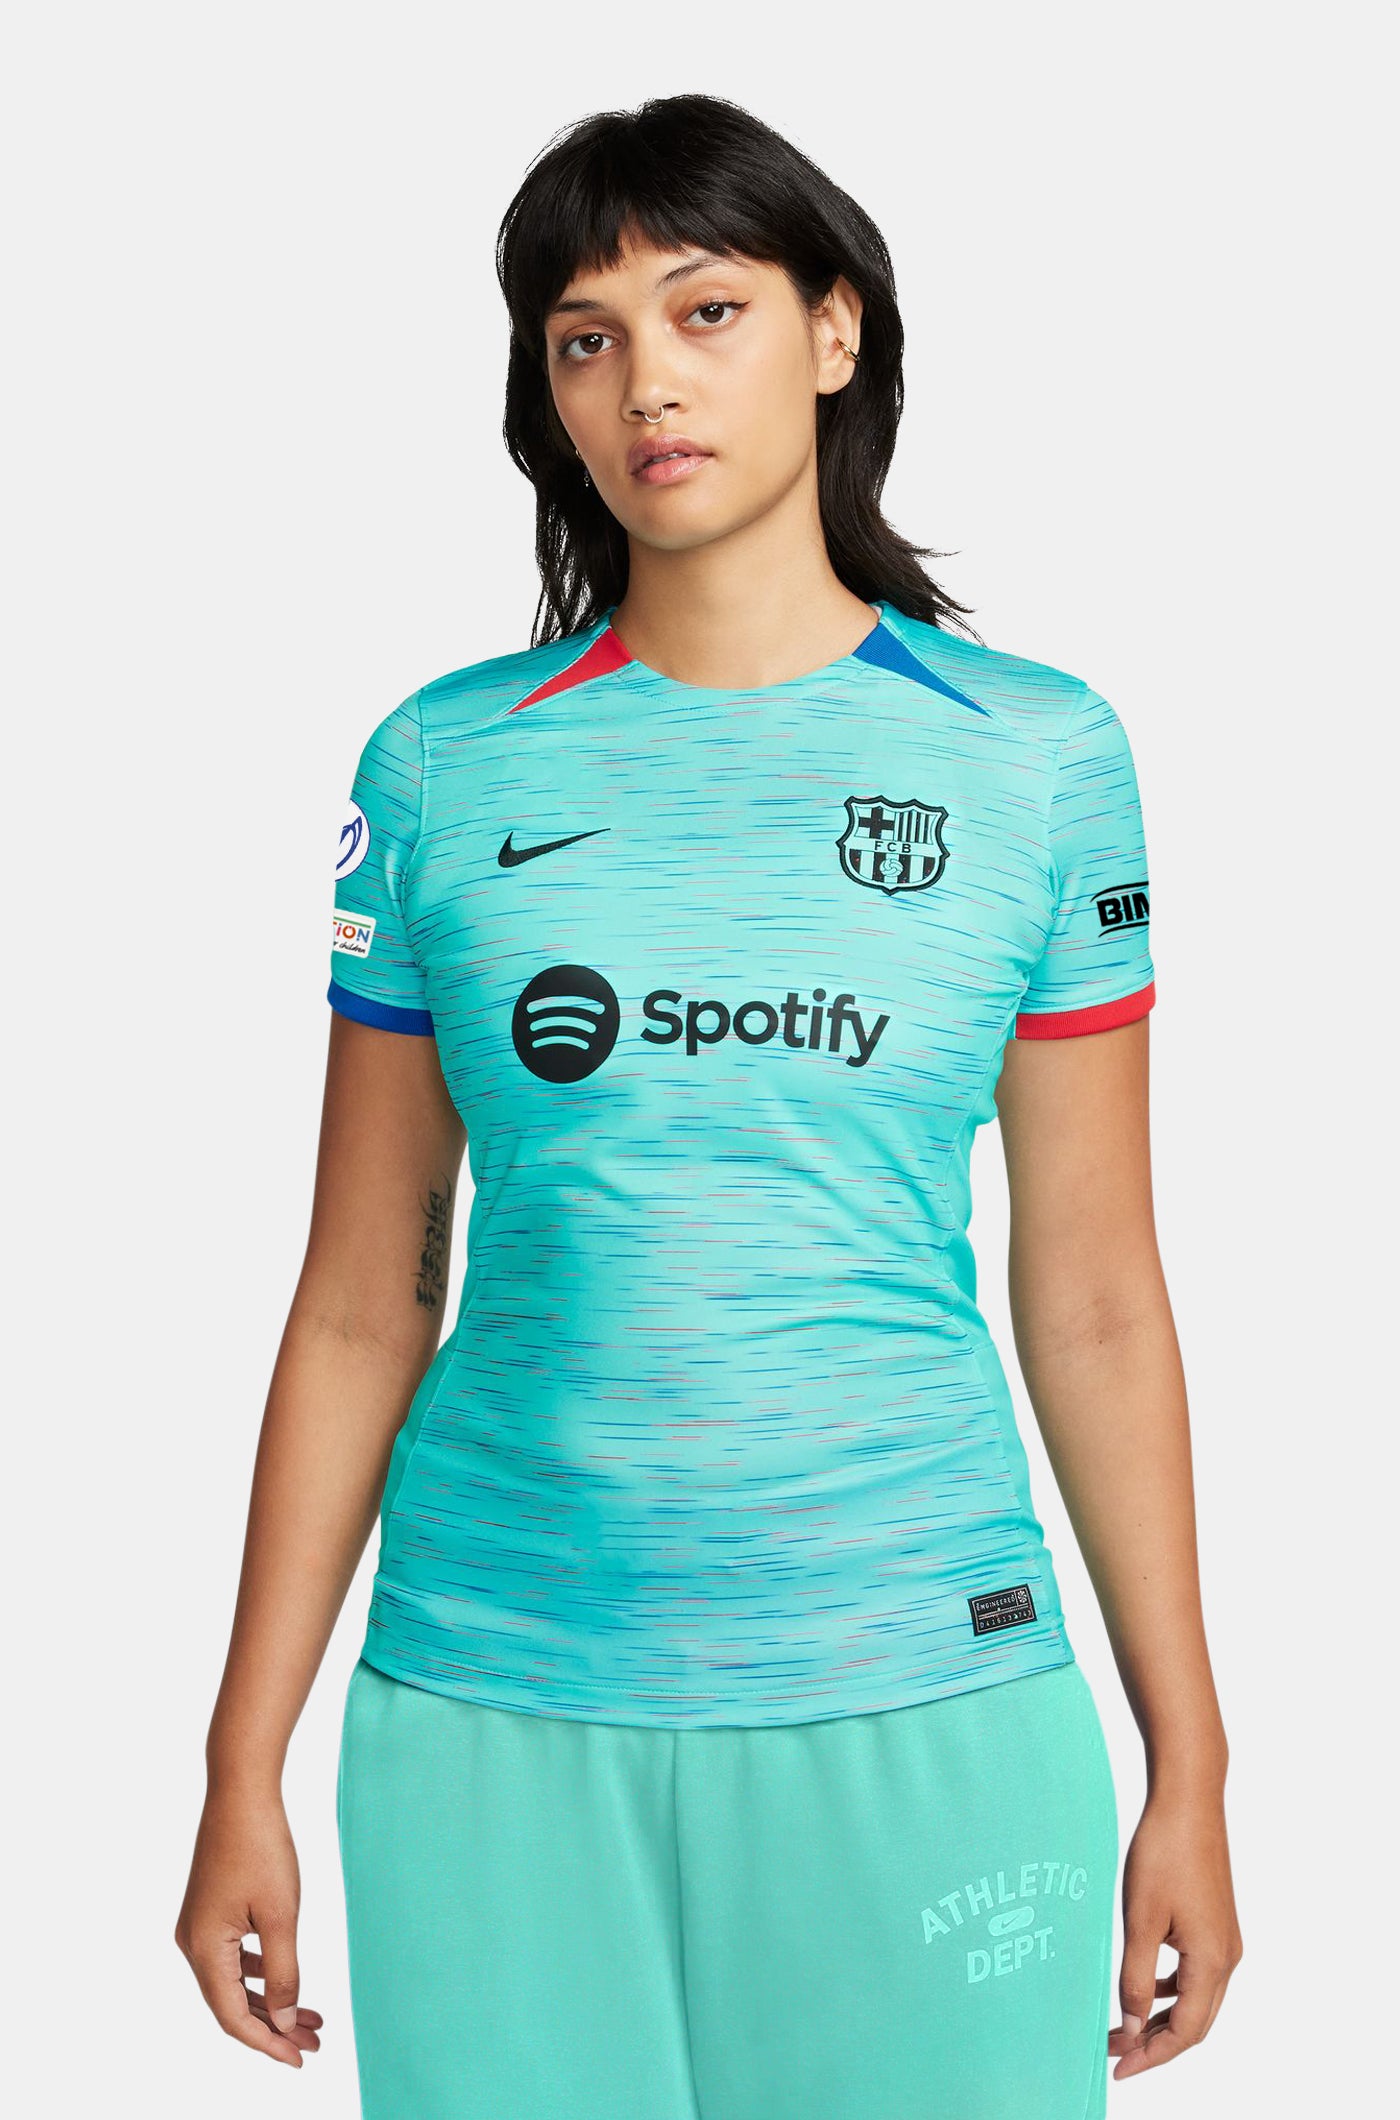 La Liga - Camiseta 2ª Equipación FC Barcelona 21/22 - Mujer [Ref21220W] -  €19.90 